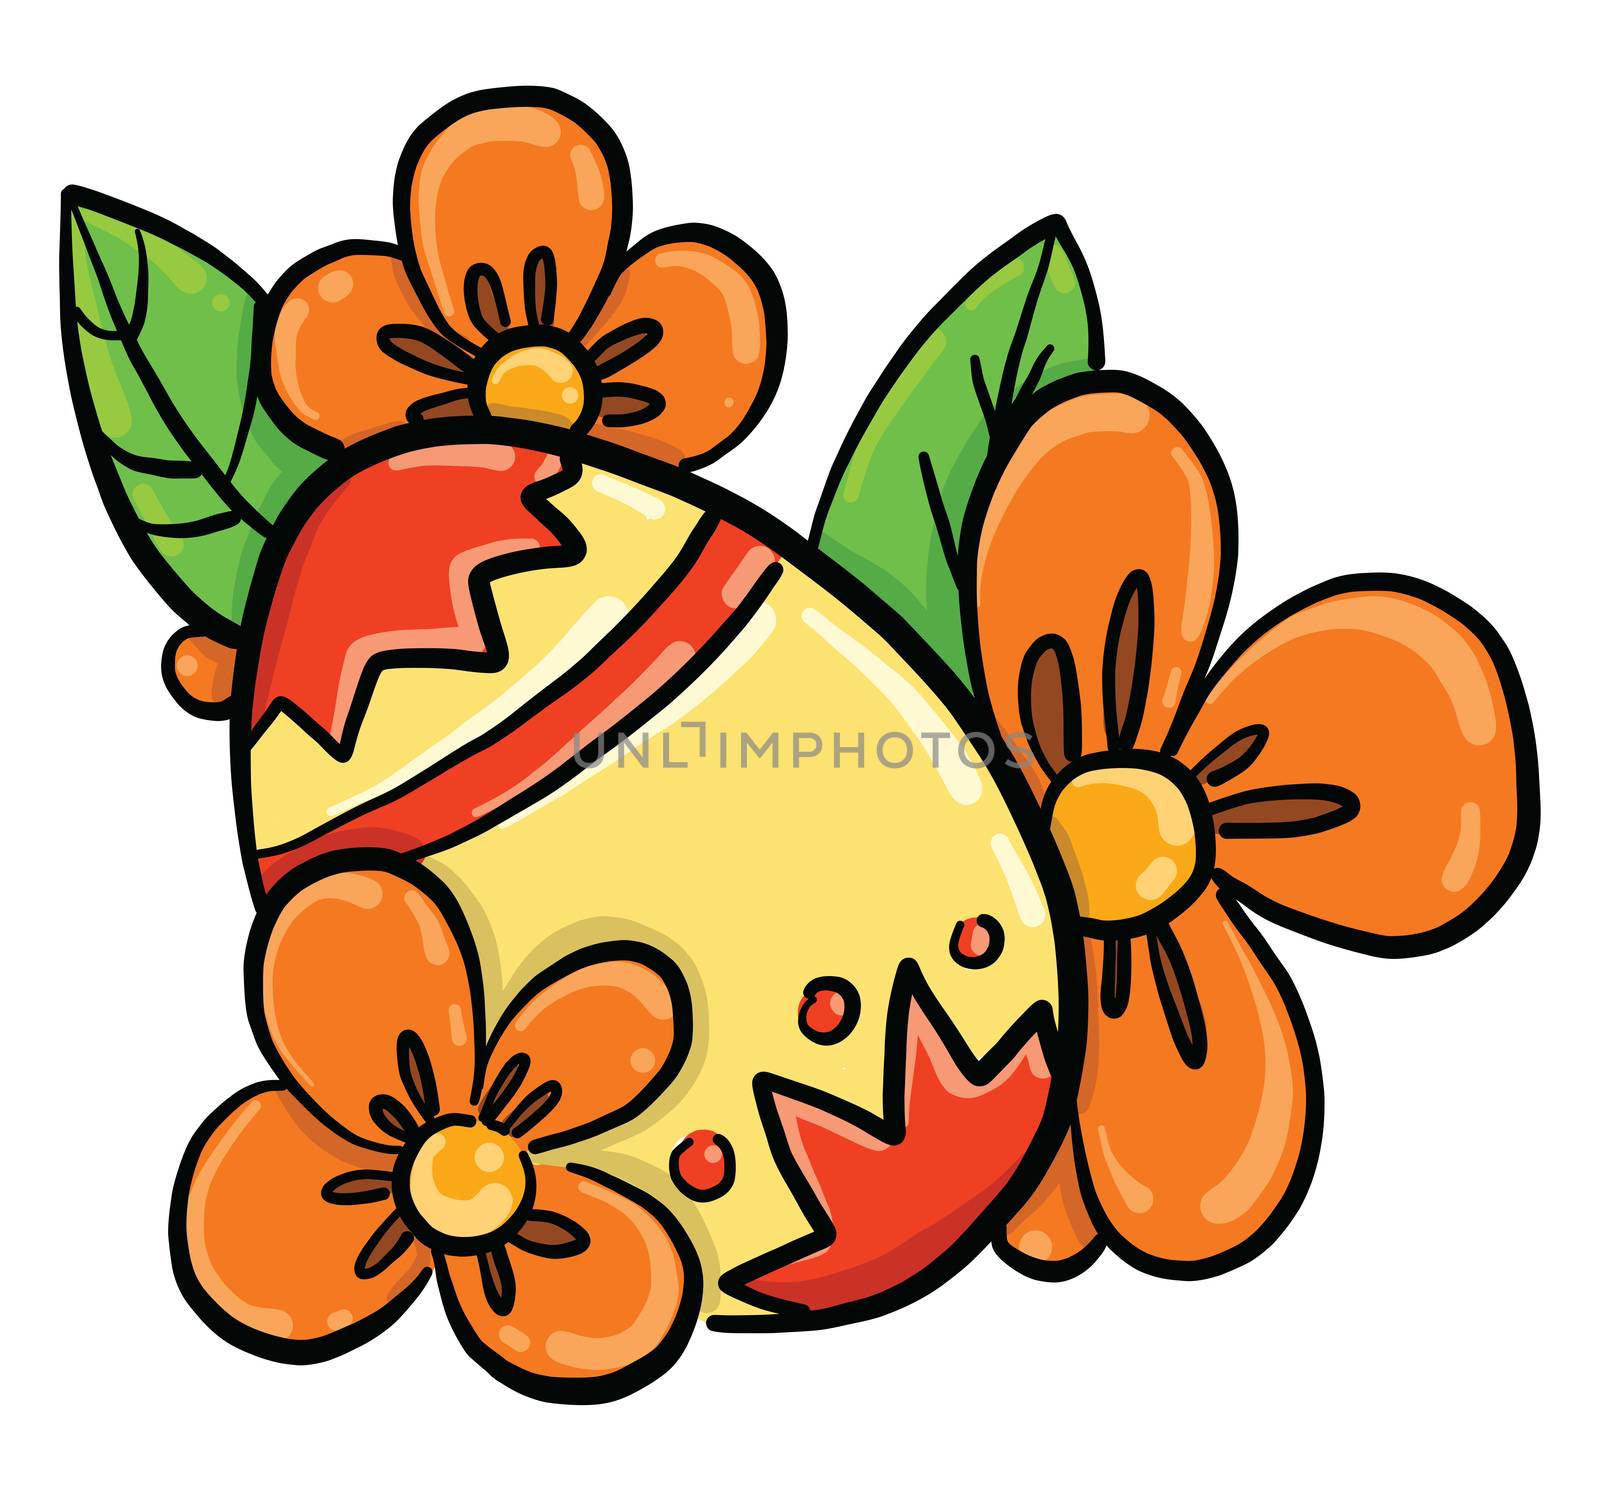 Yellow easter egg , illustration, vector on white background